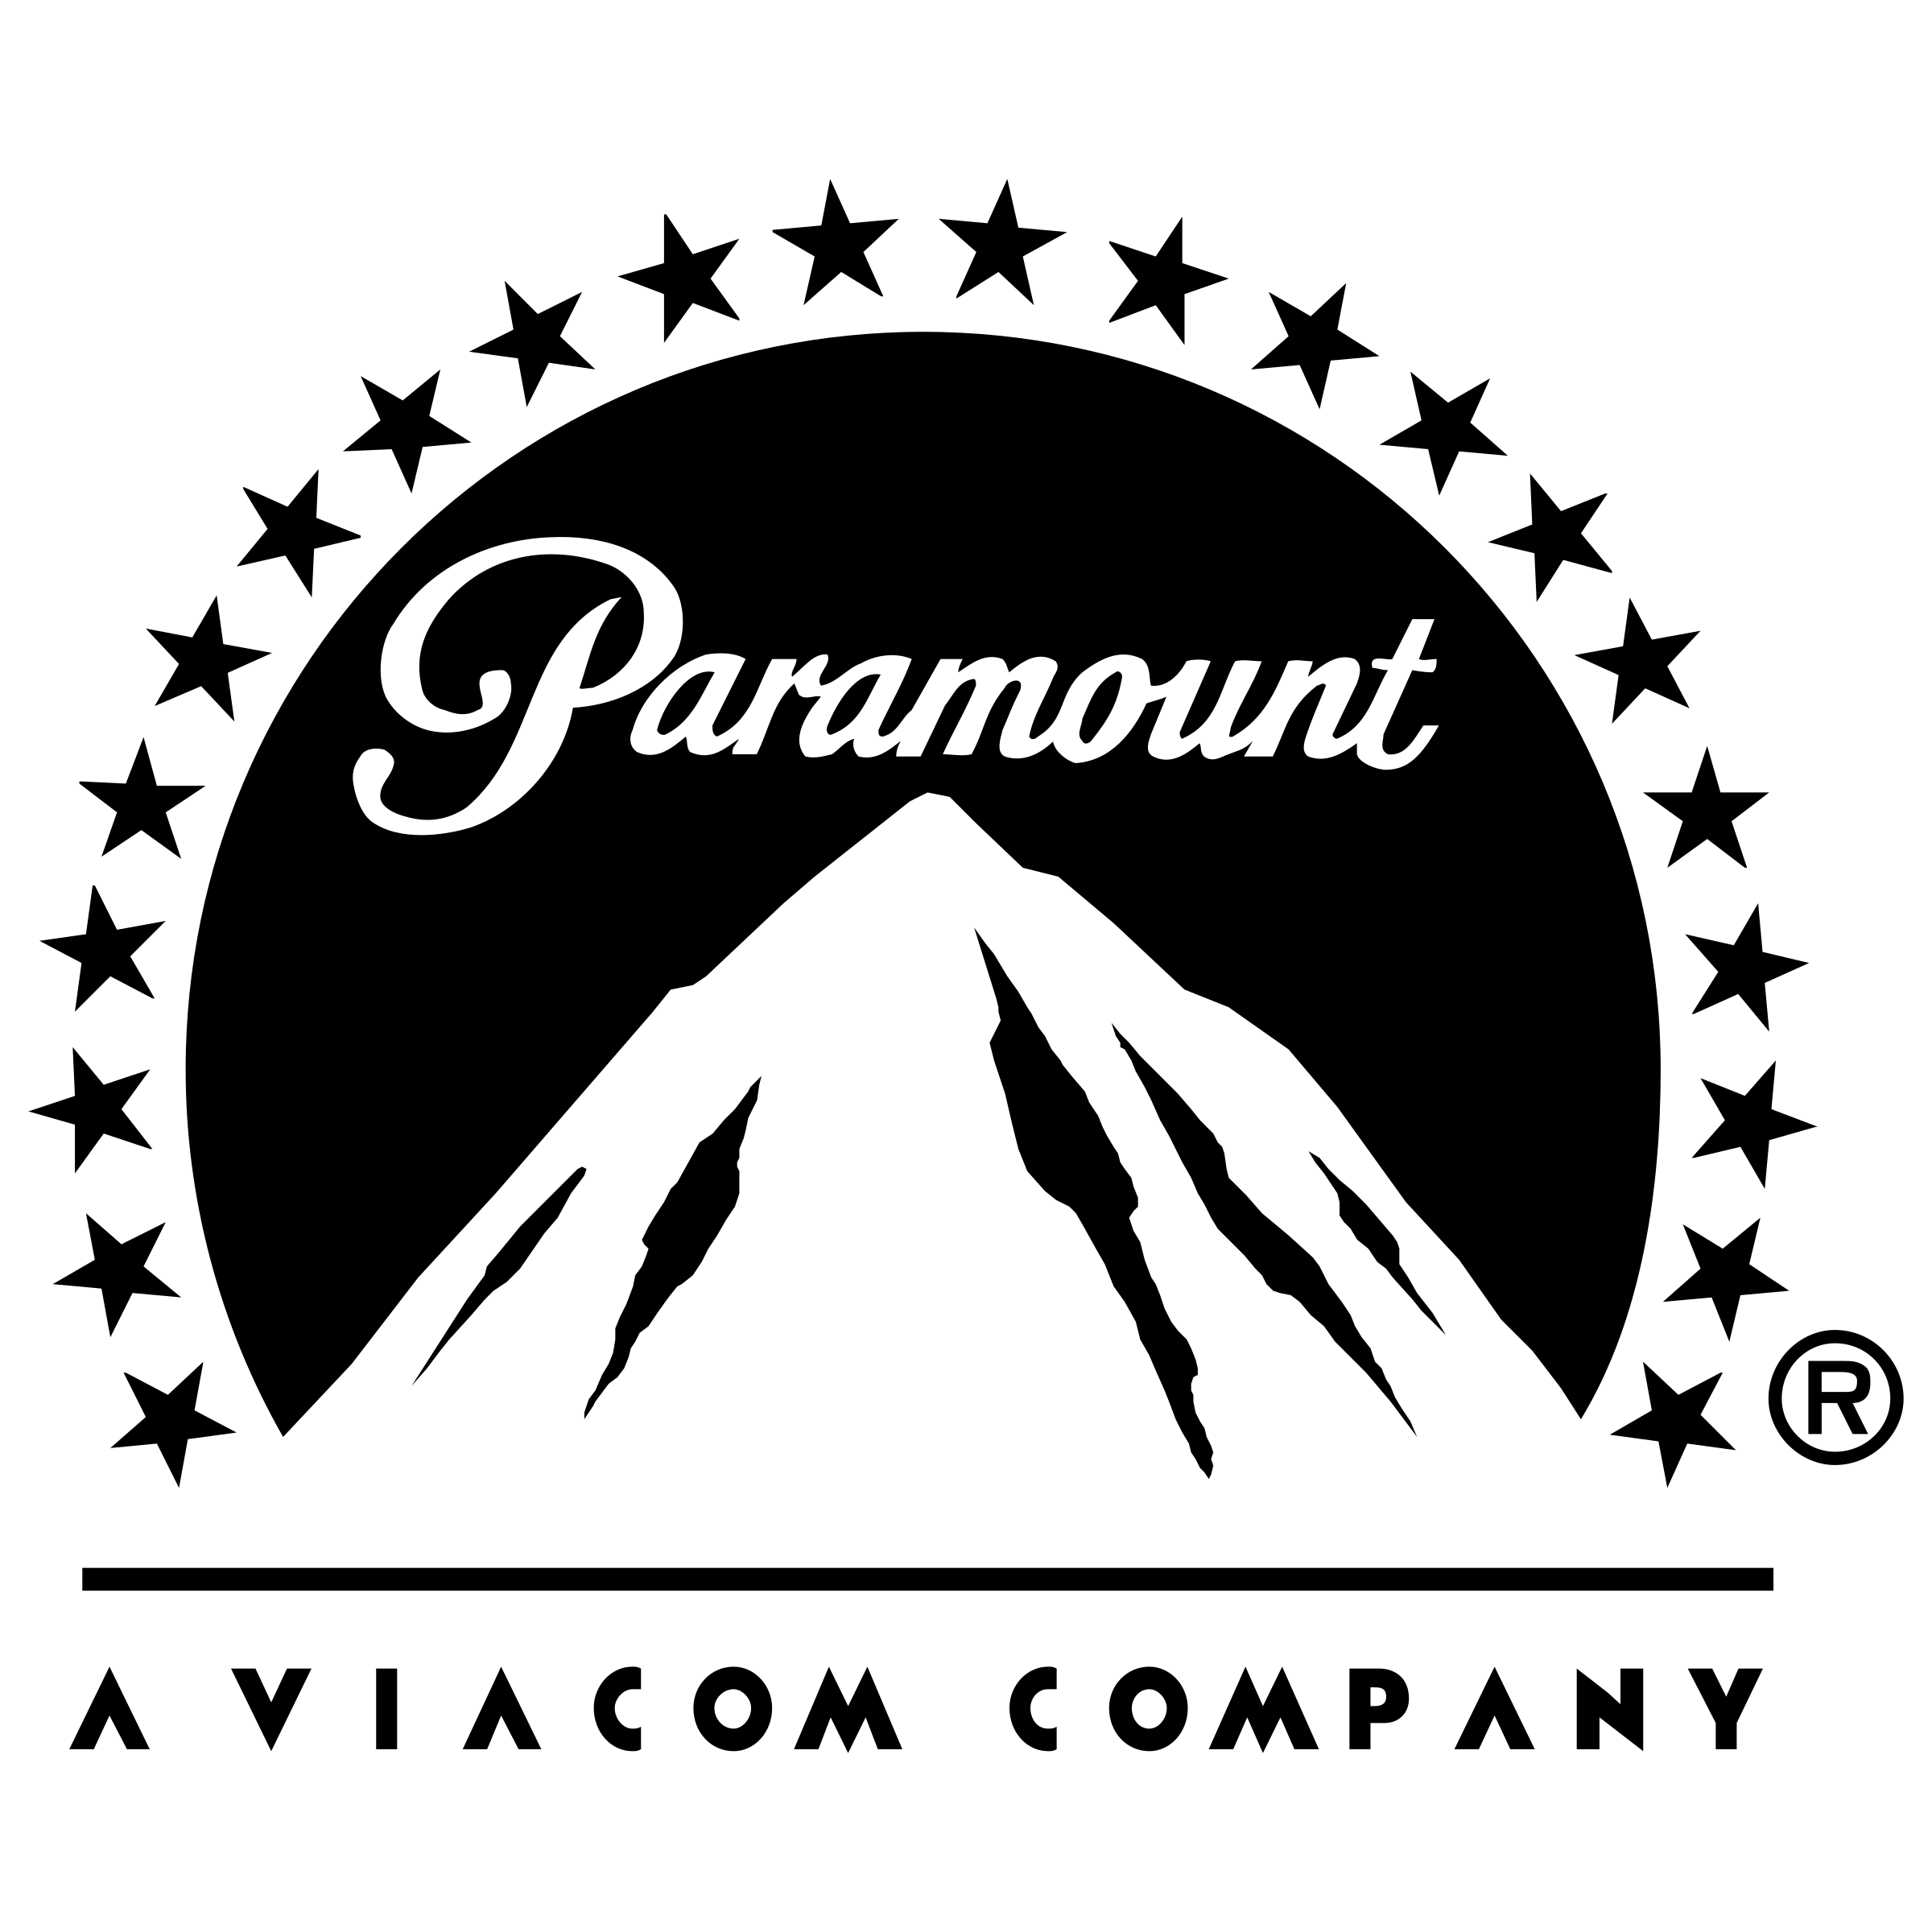 paramount-2-logo-png-transparent.png